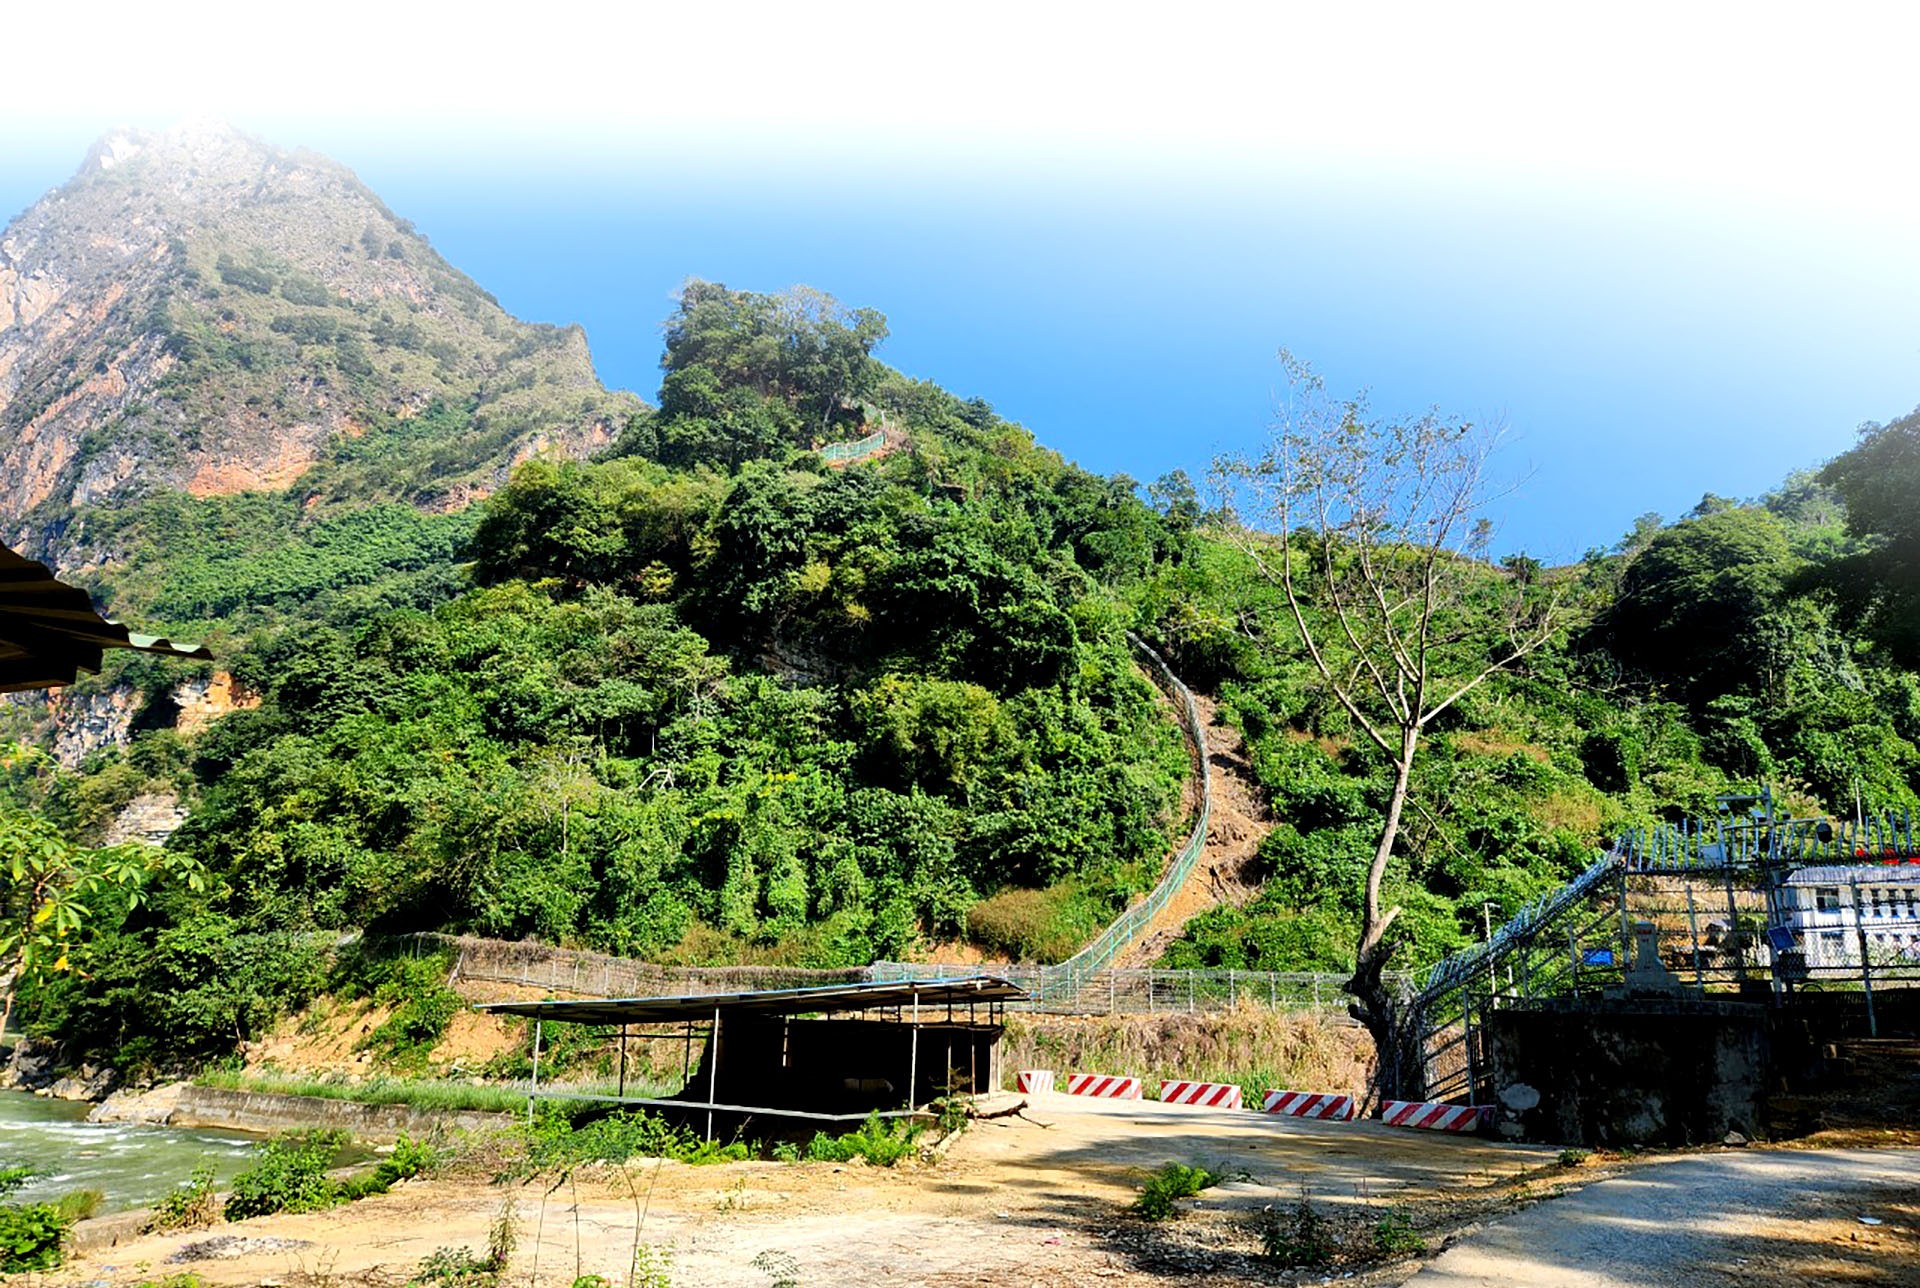 Chuyện những người “Ăn rừng ngủ núi” giữ biên ở Hà Giang - Bài 1: Những sỹ quan quân hàm xanh về làm cán bộ xã